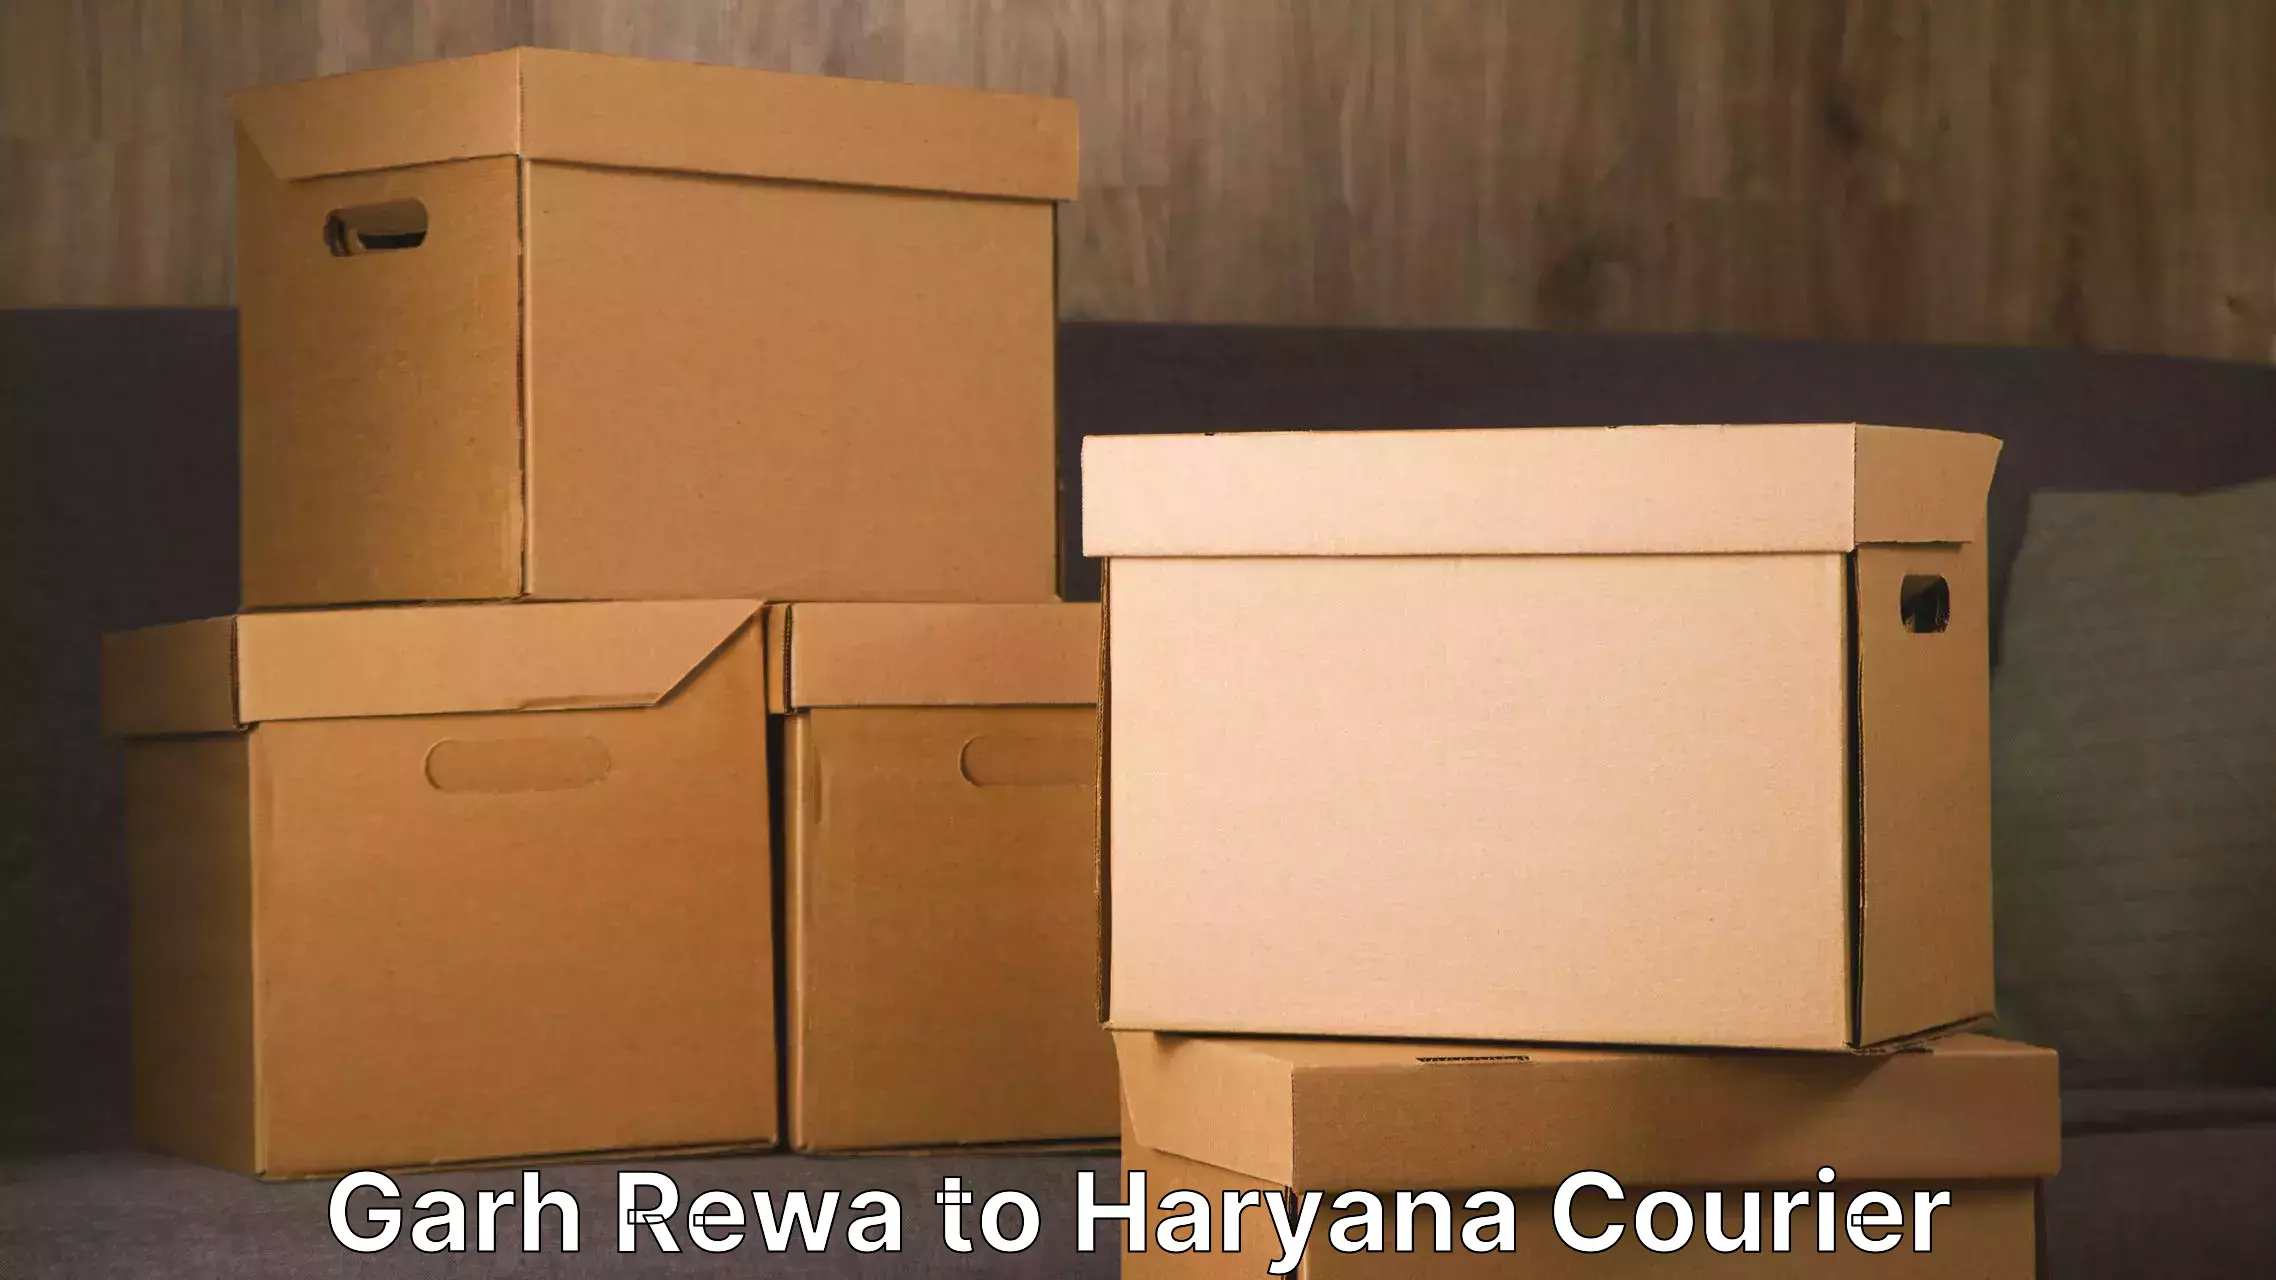 Household moving experts Garh Rewa to Panchkula